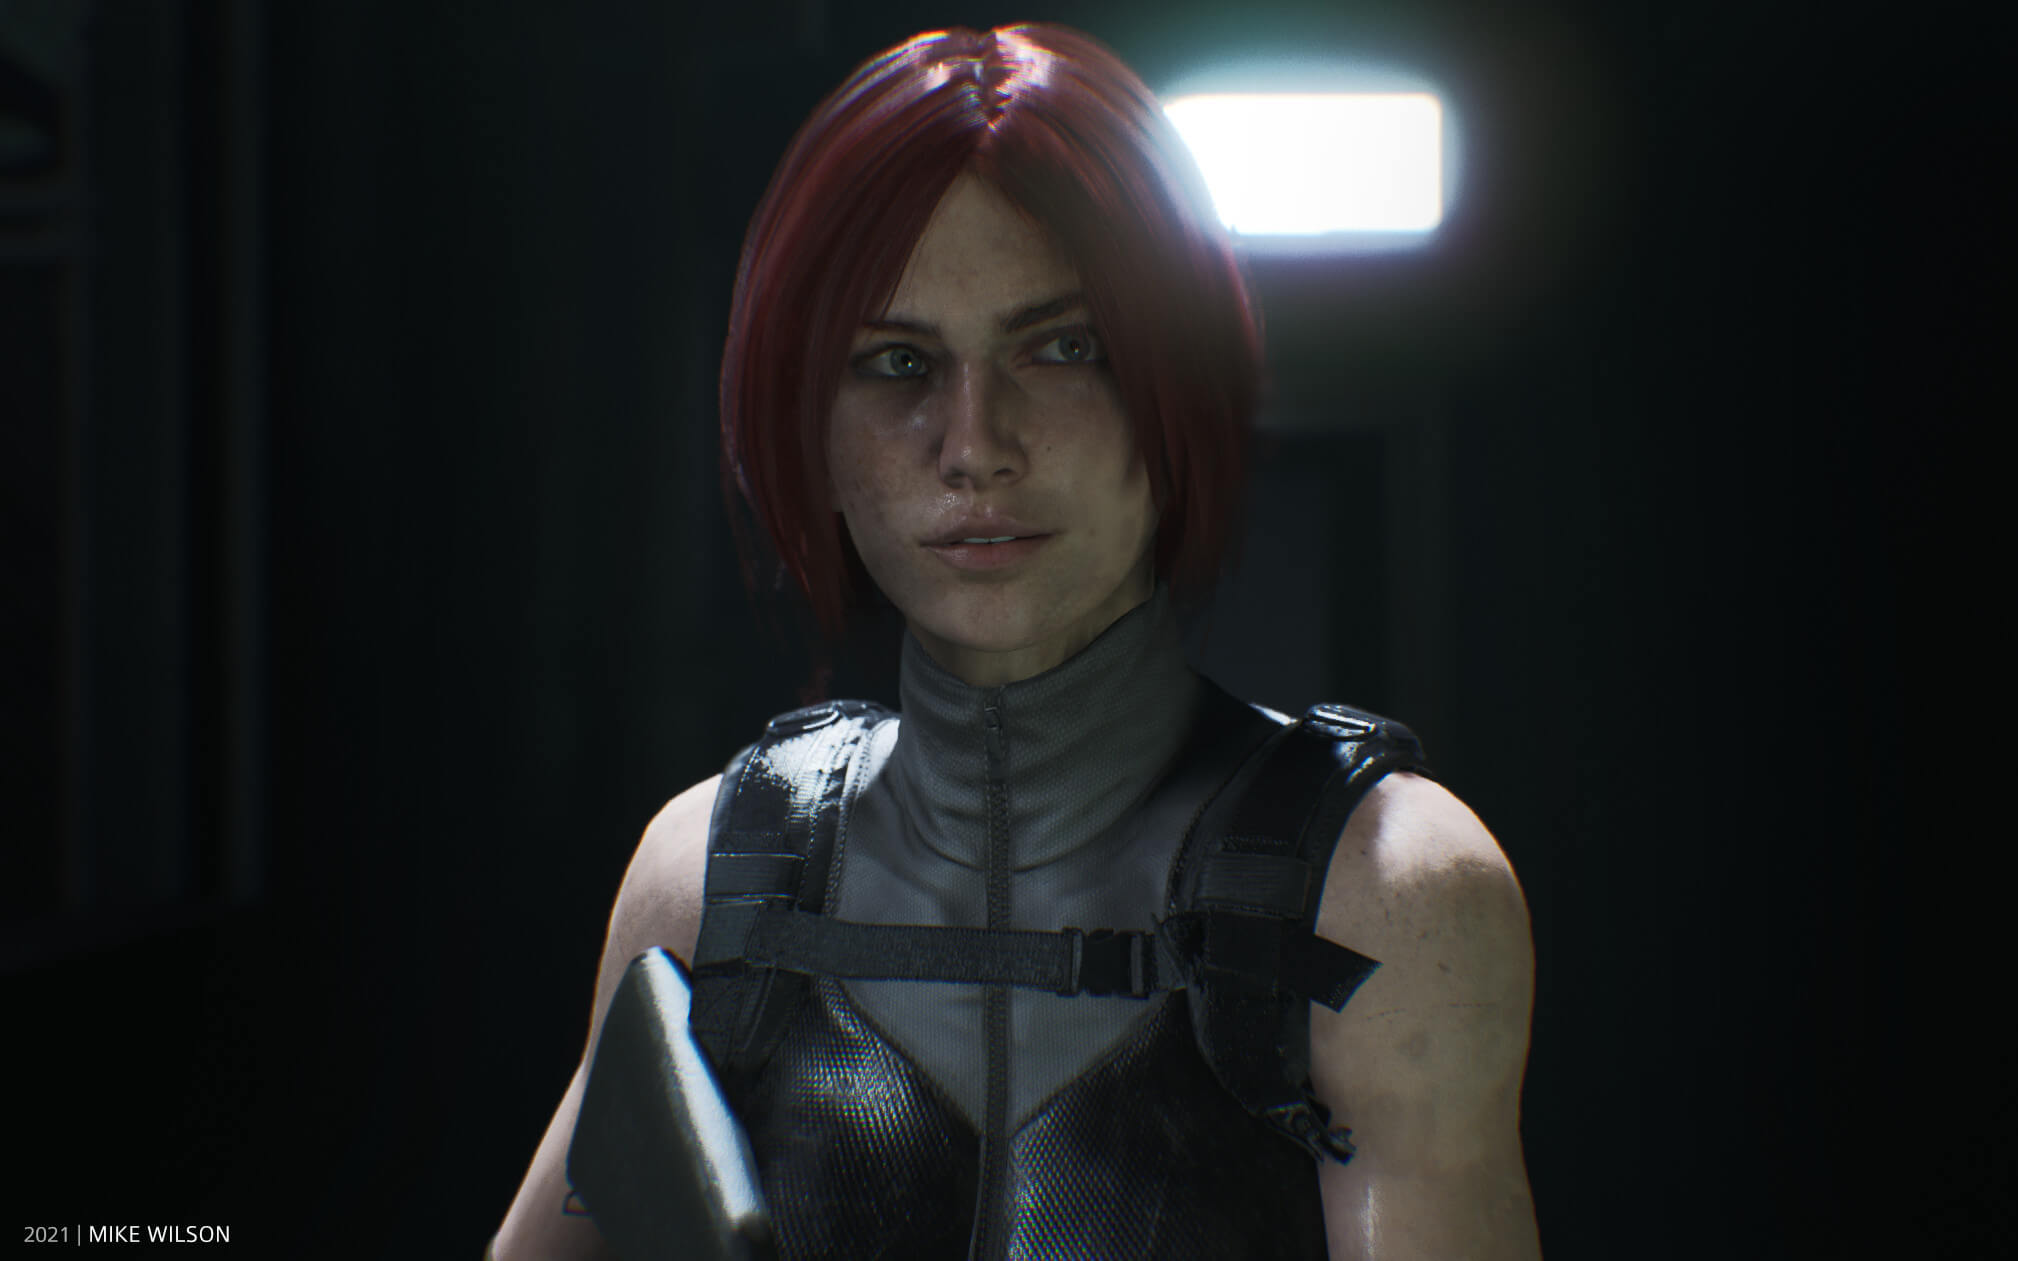 Regina, de Dino Crisis, é recriada na Unreal Engine 5